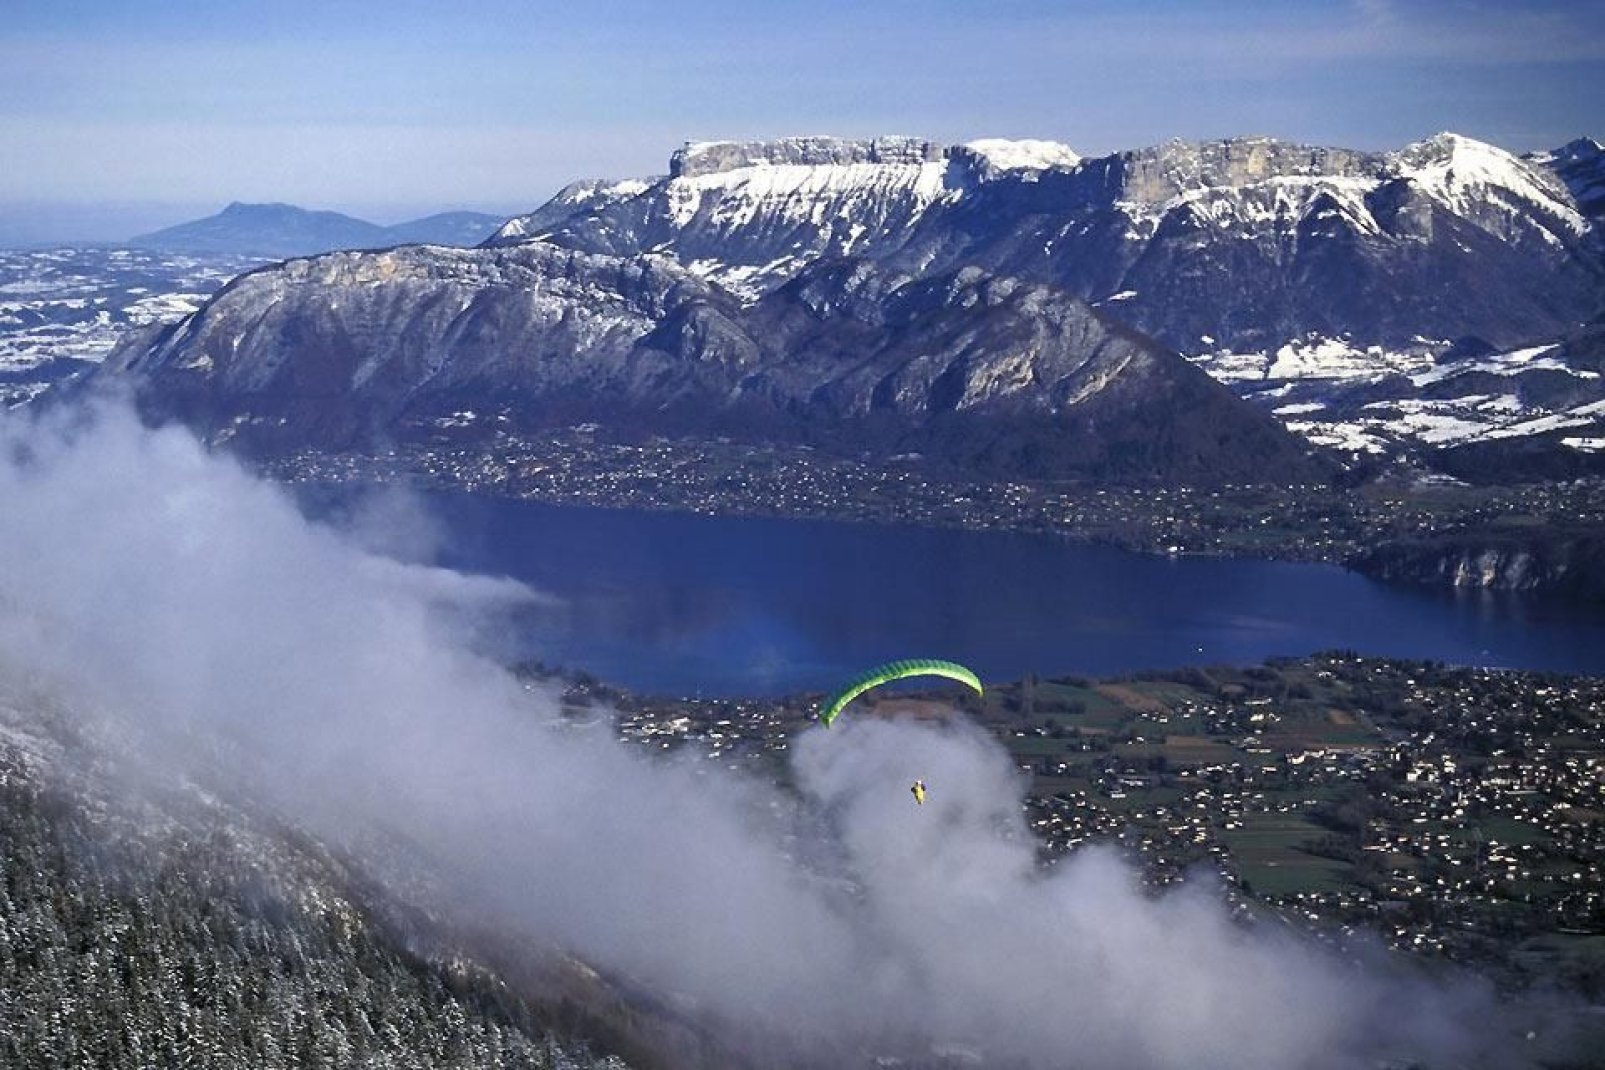 Parapente, deltaplane, saut à l'élastique ? Si vous êtes un fan de sensations fortes, le lac d'Annecy est fait pour vous !